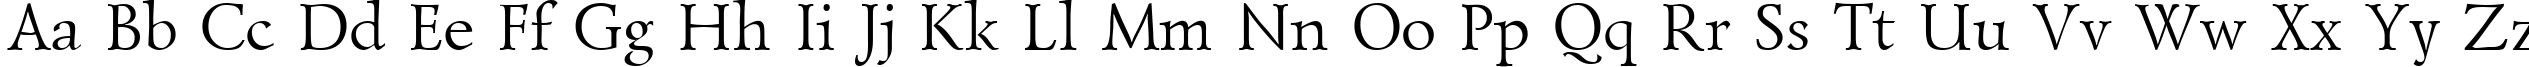 Пример написания английского алфавита шрифтом LazurskiCTT